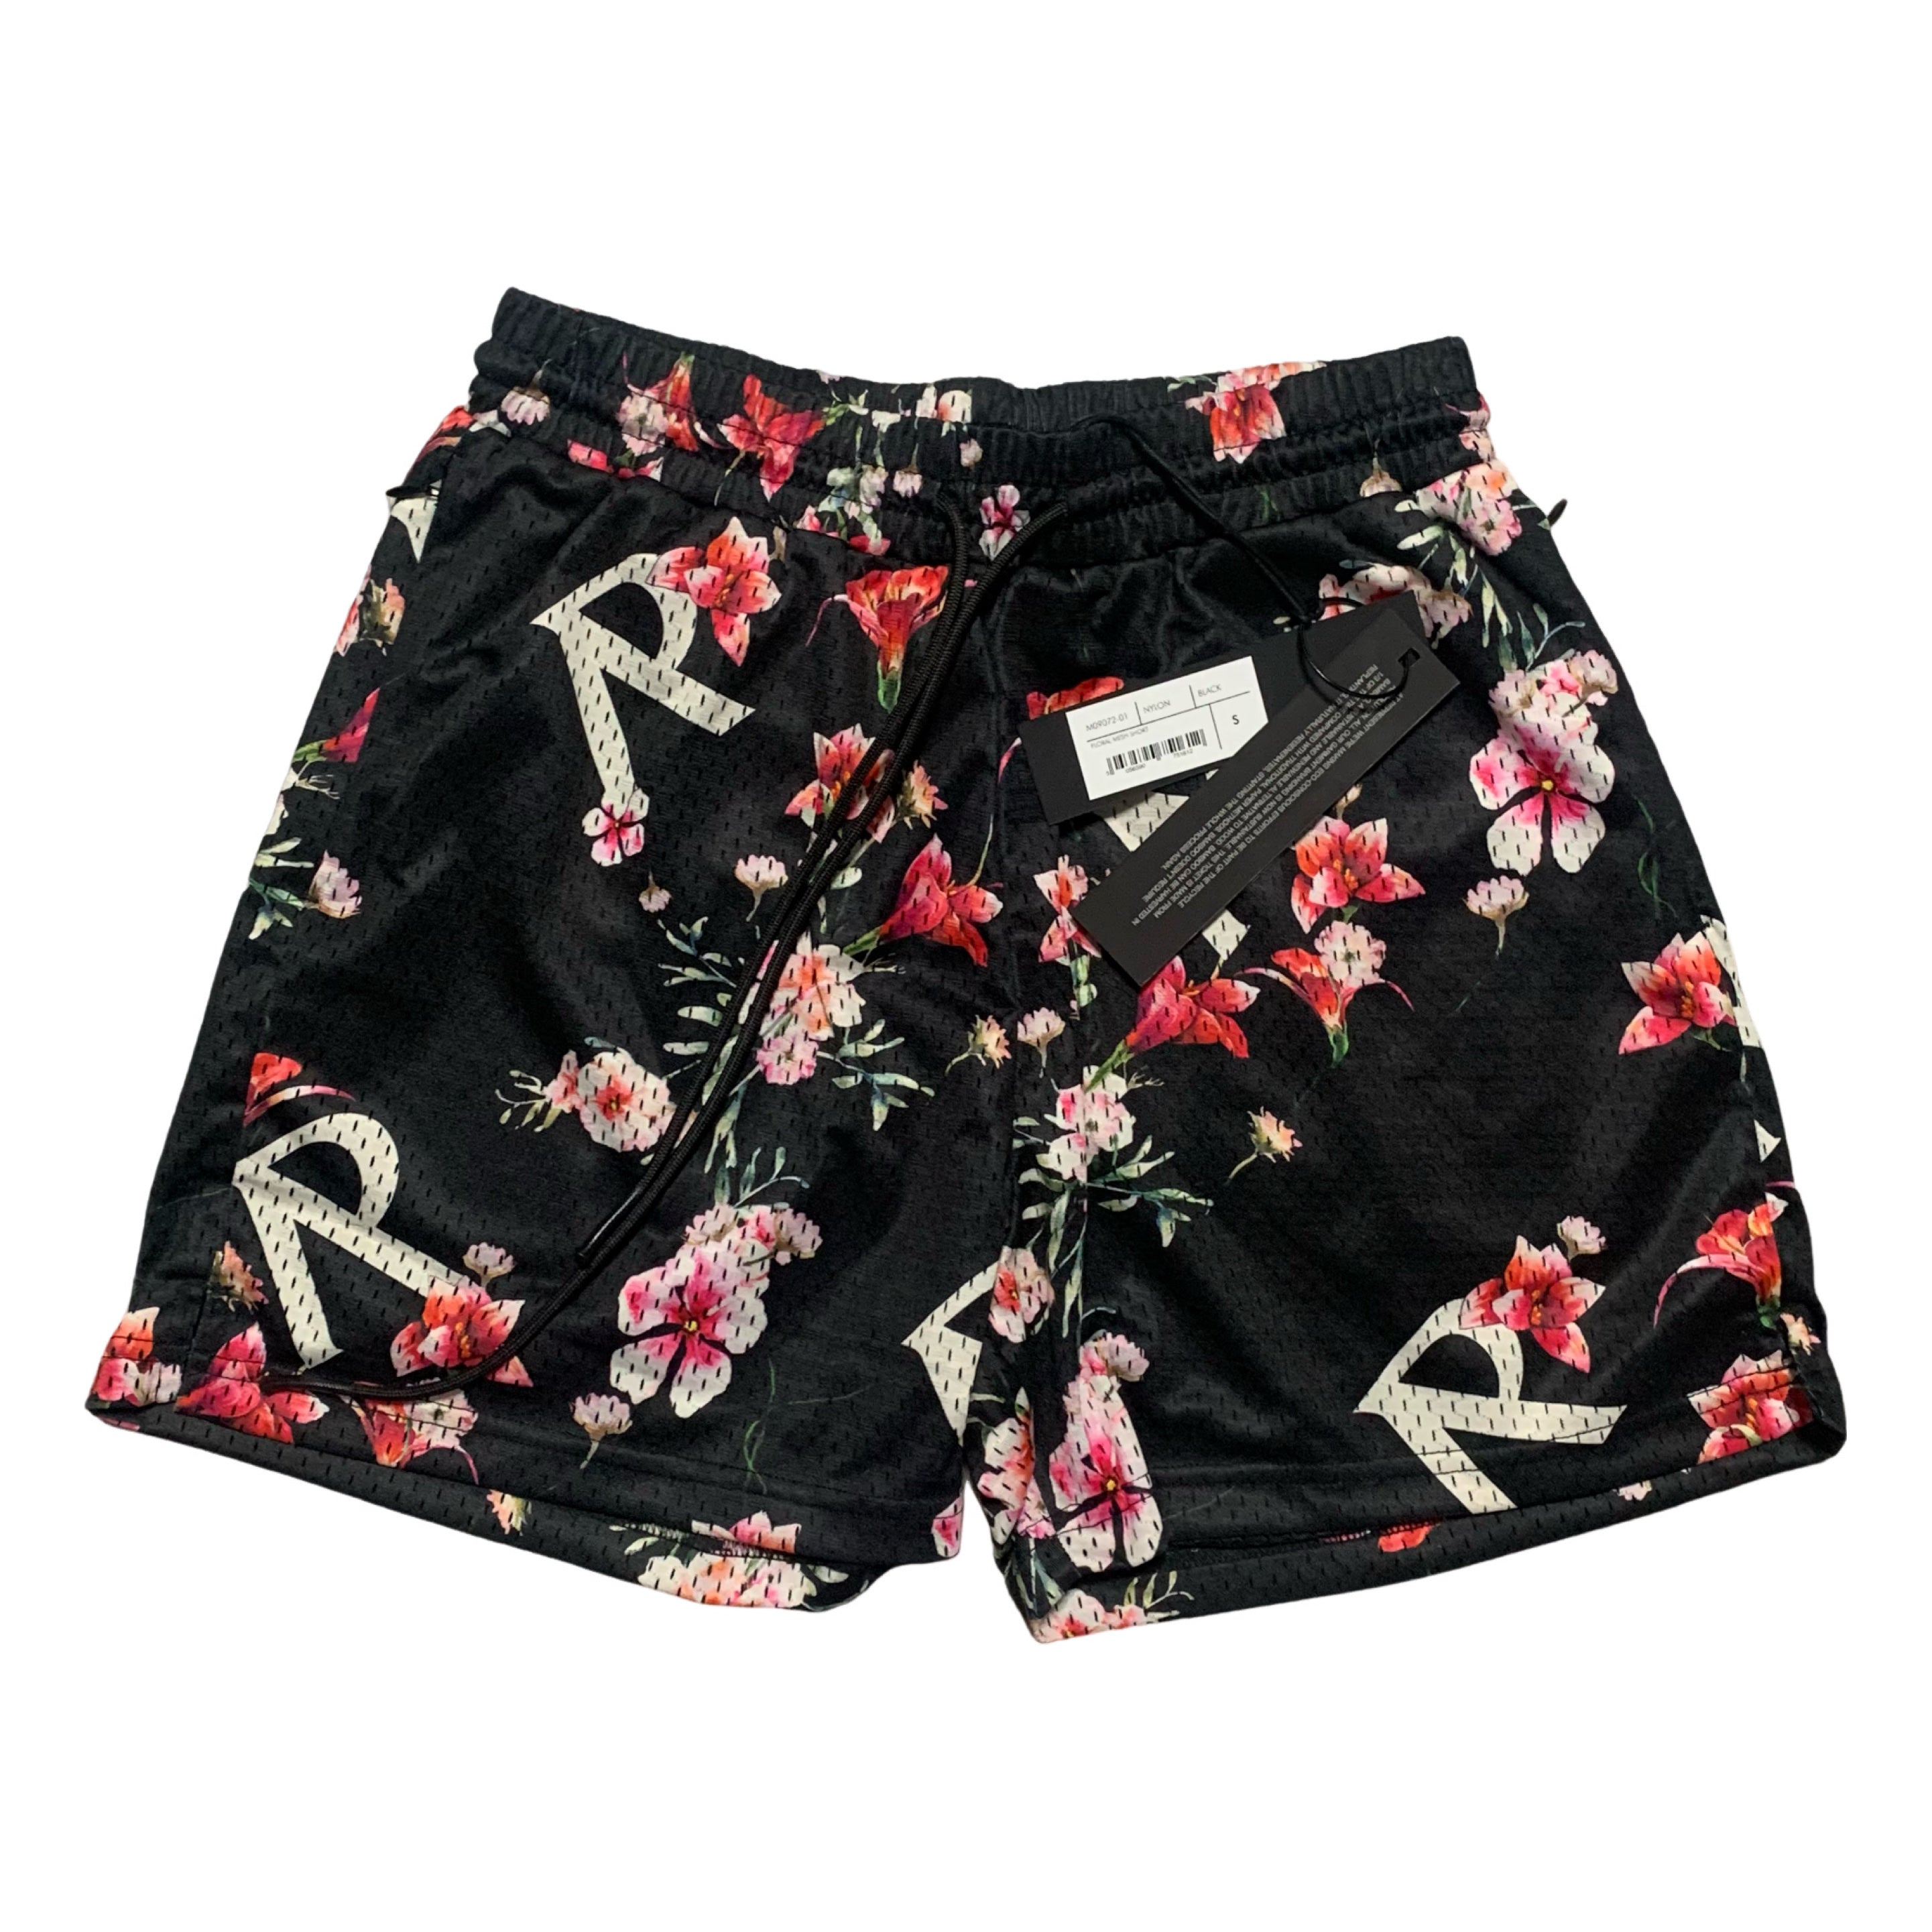 Represent Small Shorts Floral Mesh Black Shorts